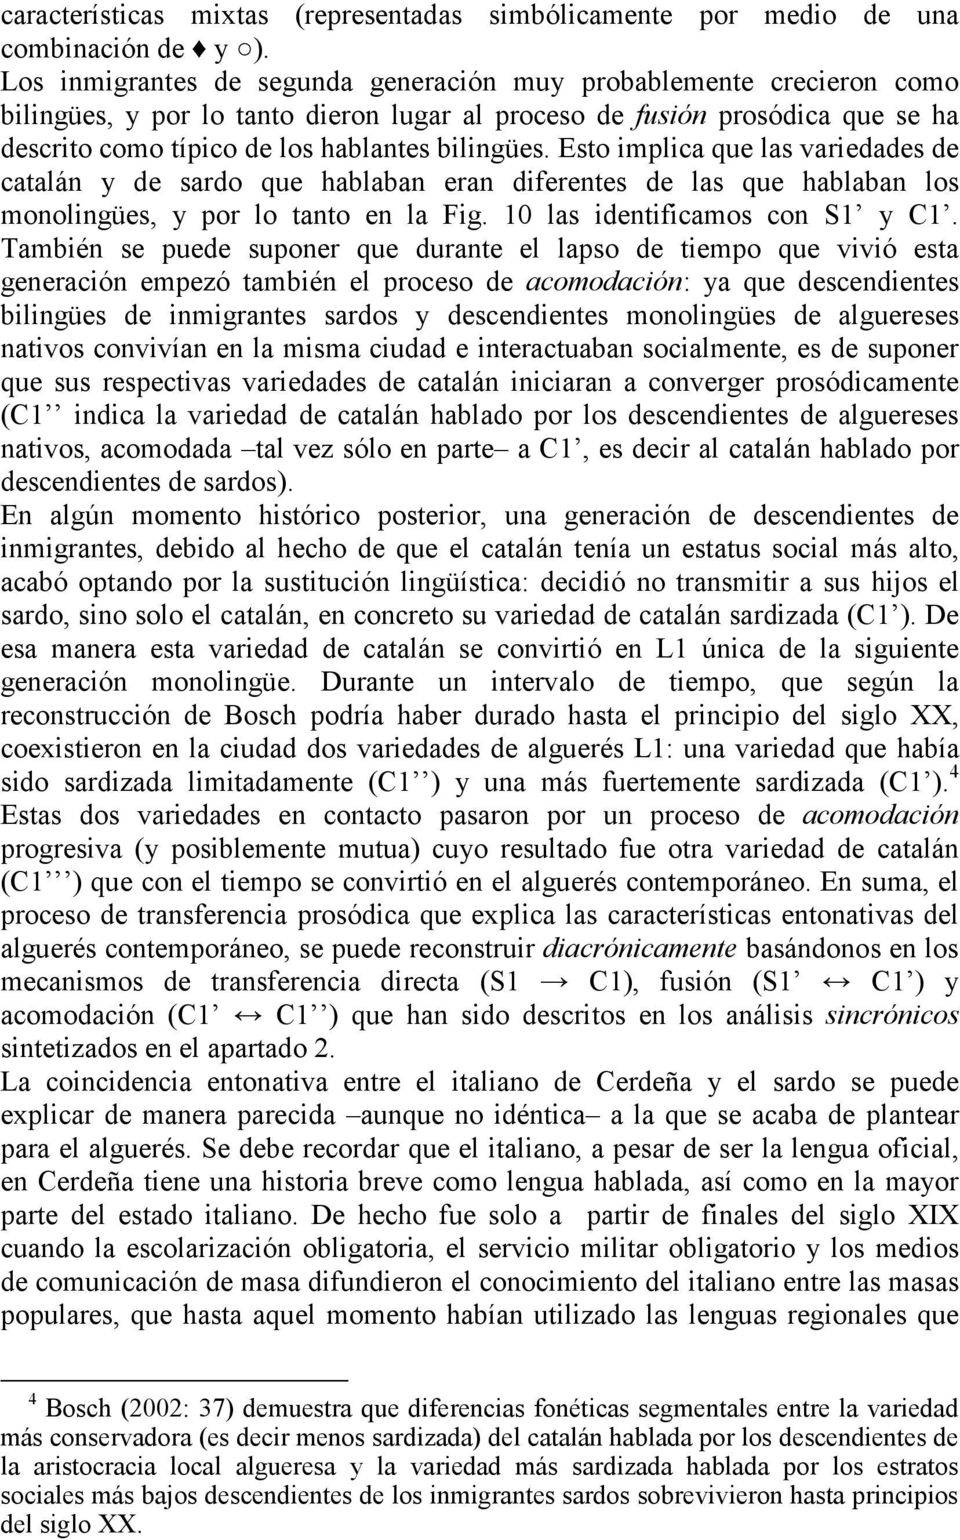 Esto implica que las variedades de catalán y de sardo que hablaban eran diferentes de las que hablaban los monolingües, y por lo tanto en la Fig. 10 las identificamos con S1 y C1.